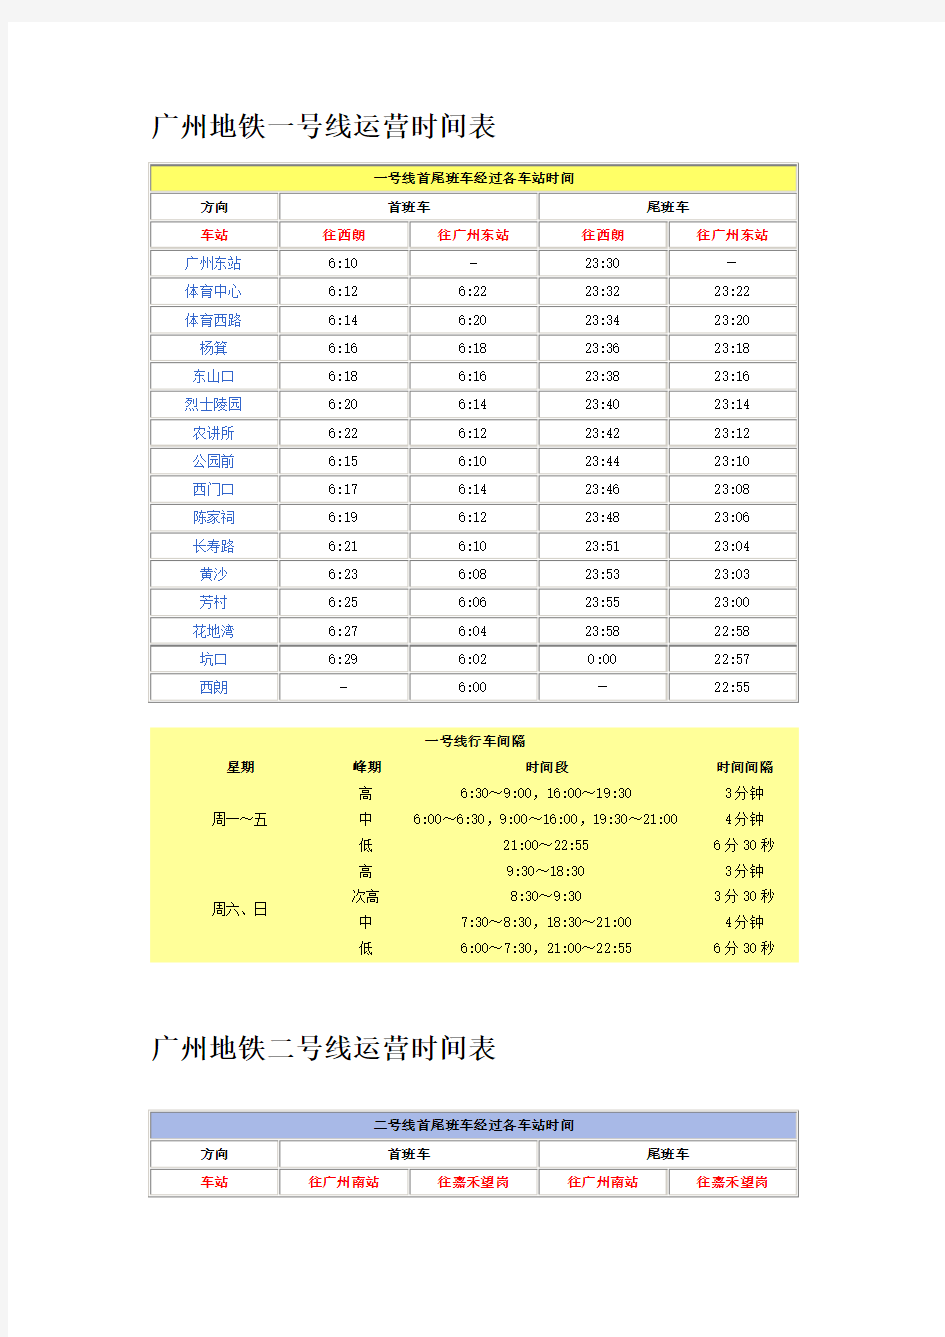 2014广州地铁线路运营时间表(含六号线)